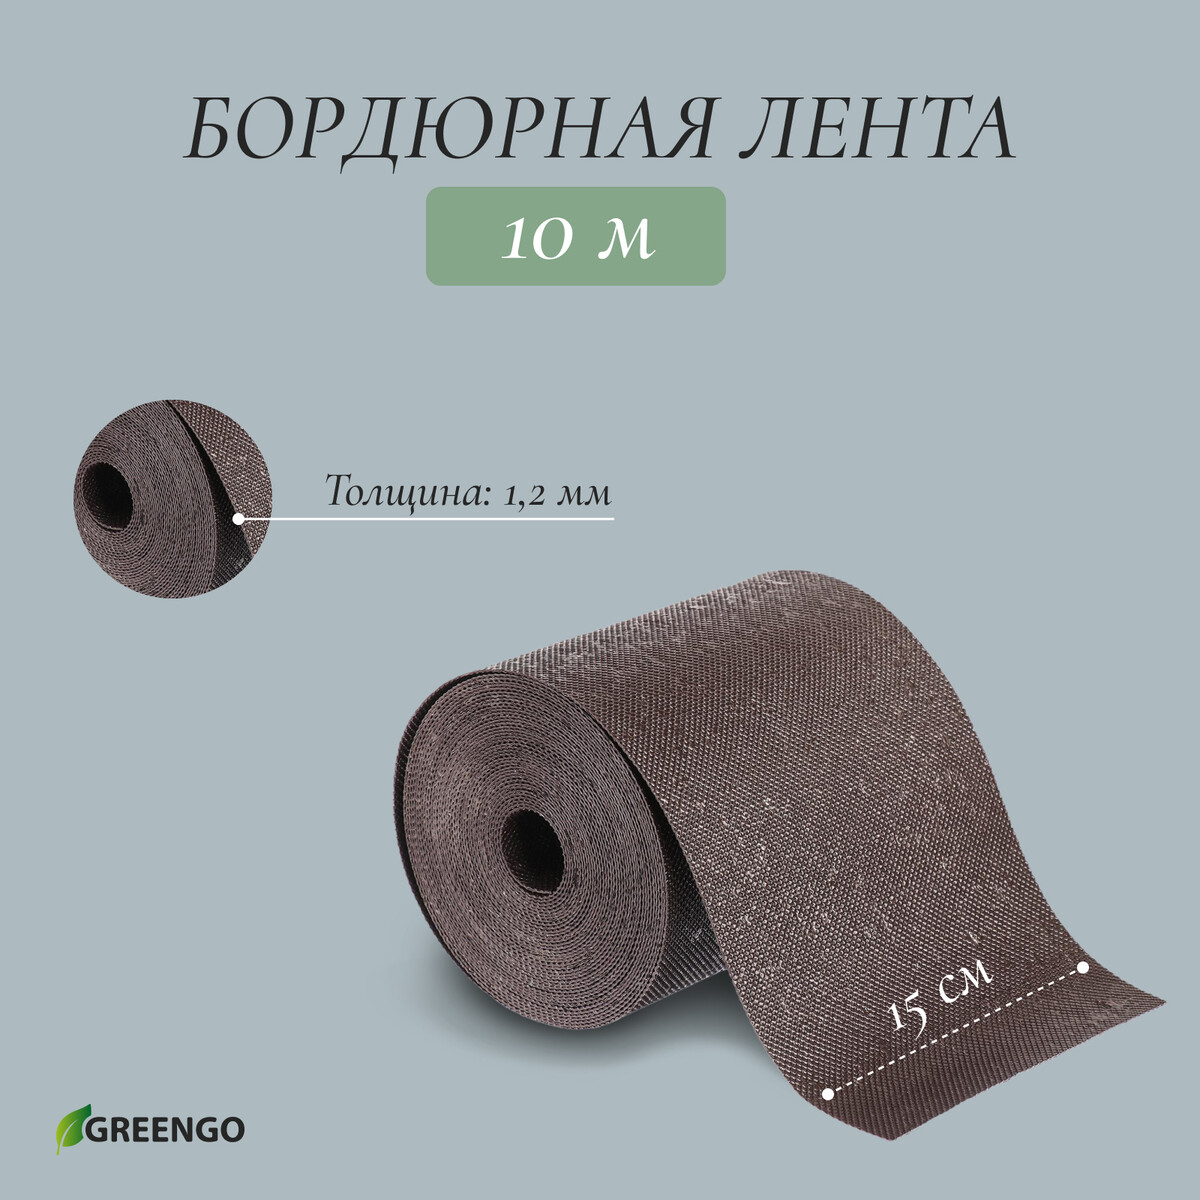 Лента бордюрная, 0.15 × 10 м, толщина 1.2 мм, пластиковая, коричневая, greengo лента бордюрная 0 2 × 9 м толщина 1 2 мм пластиковая фигурная коричневая